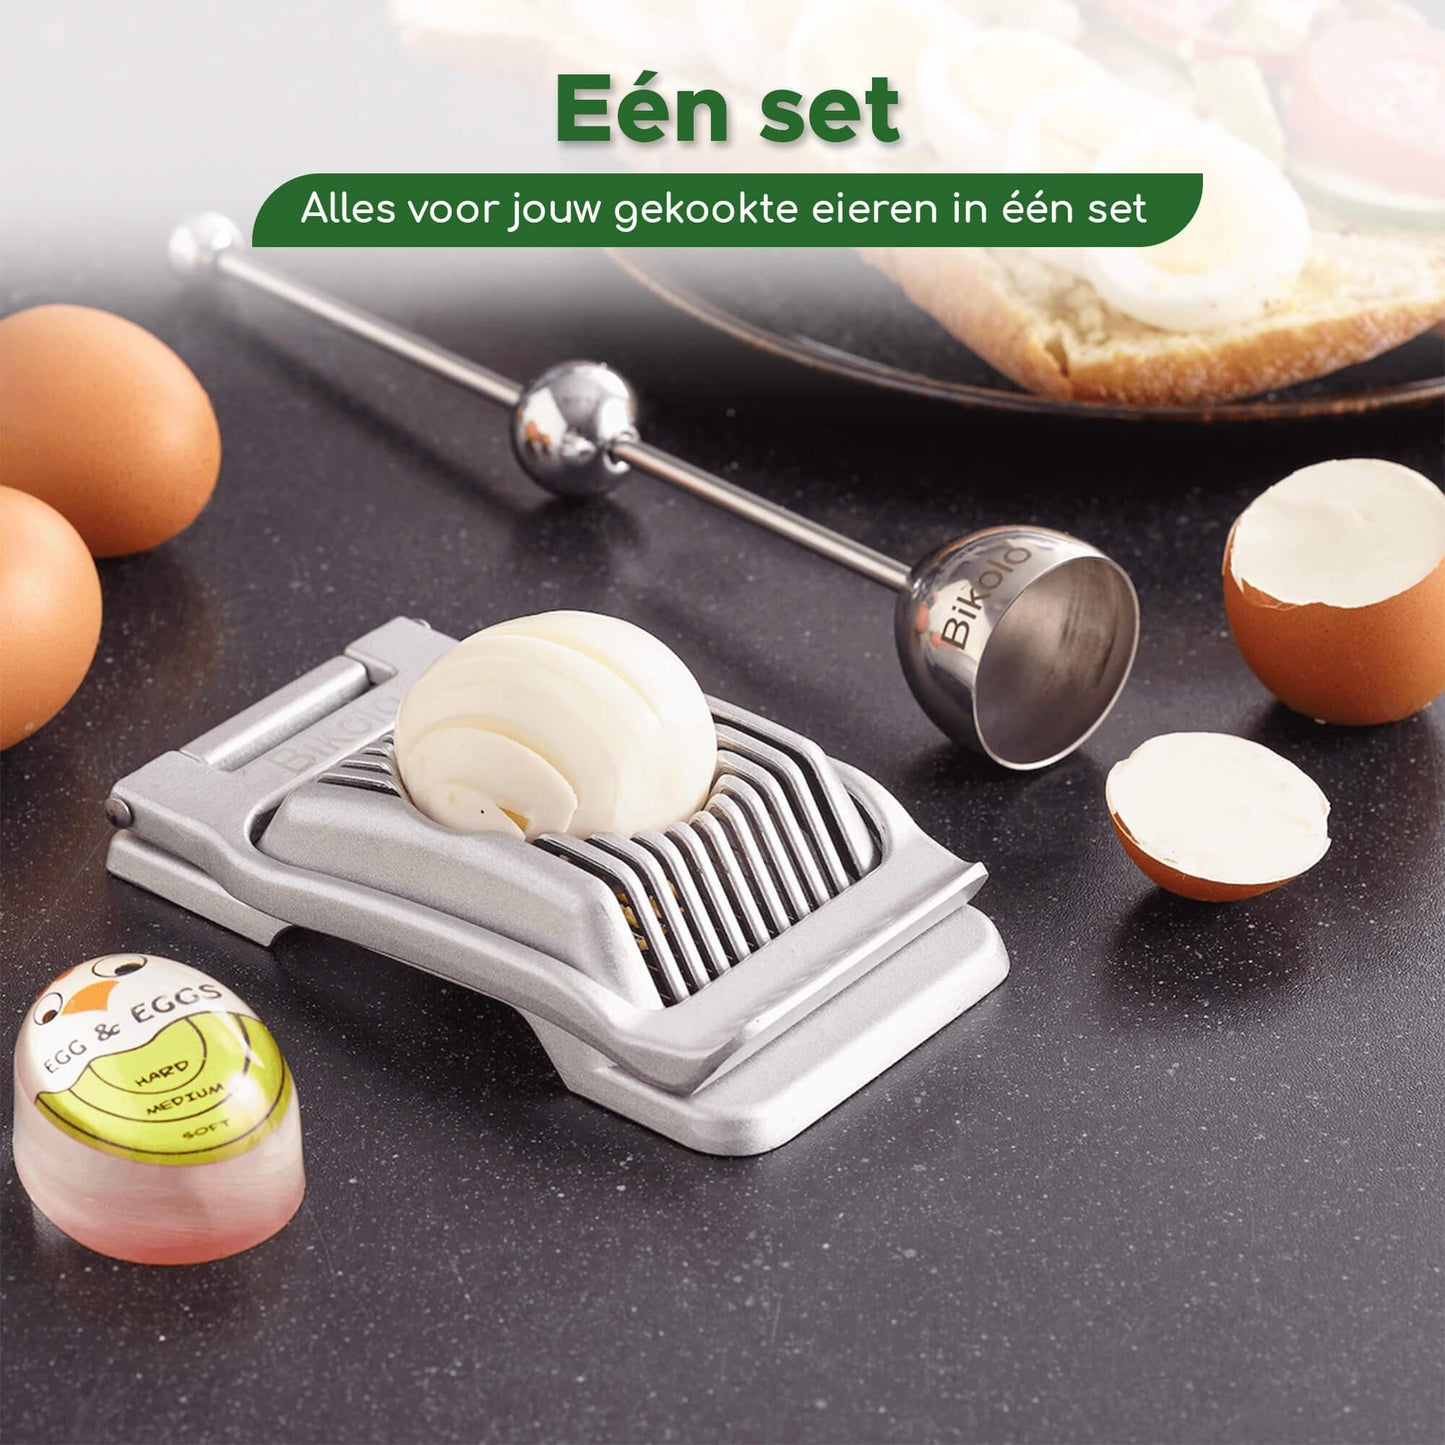 egg timer kopen om toe te voegen aan jouw kookgerei collectie